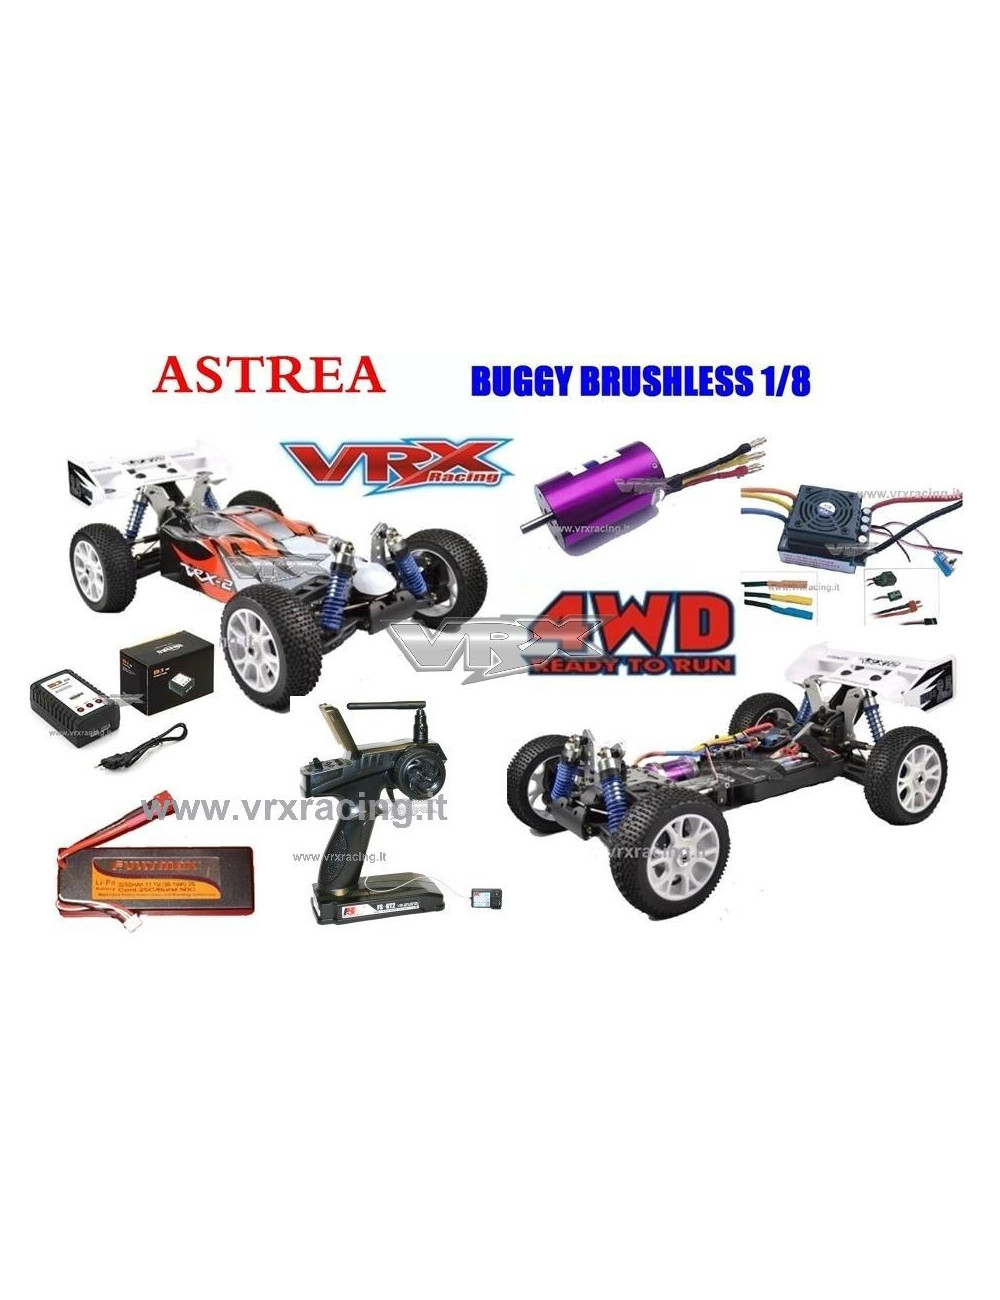 VRX-2E ASTREA Buggy Elettrico Brushless con Batteria Lipo 11,1V e Radio 2.4gHz in Scala 1/8 4WD RTR